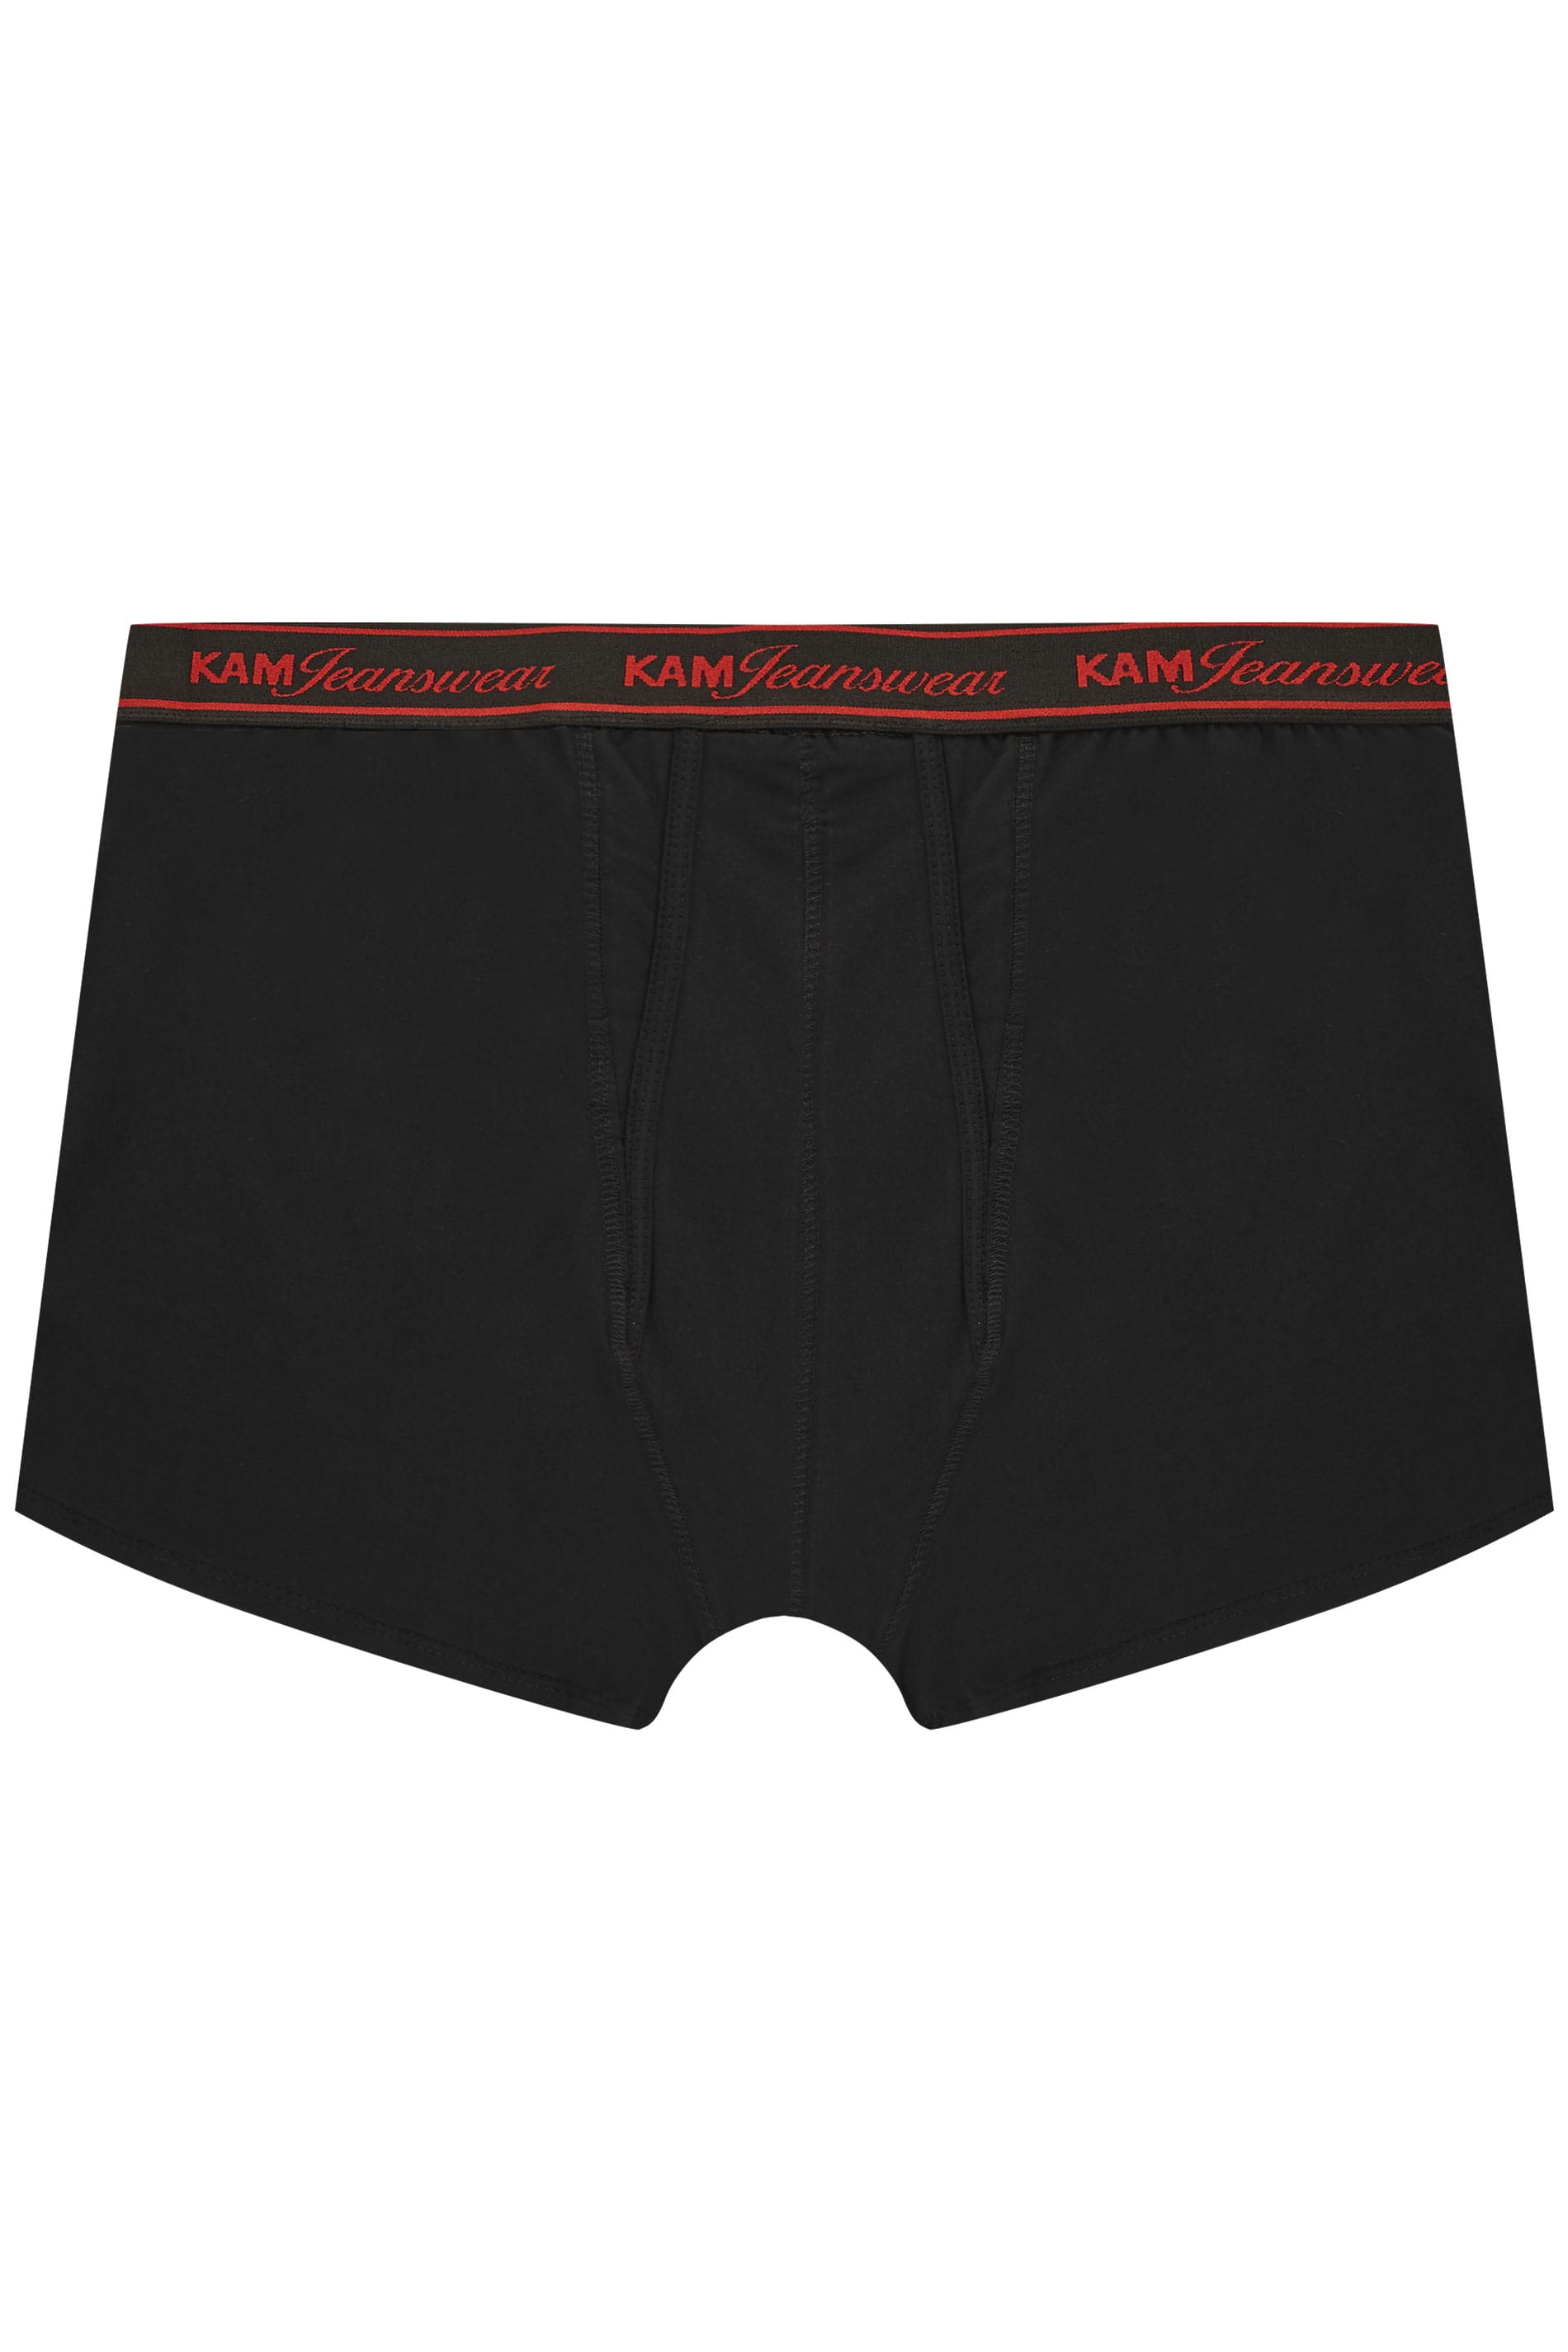 Kam Jeanswear Mens Twin Pack Jersey Boxers Men's Clothing Underwear ...